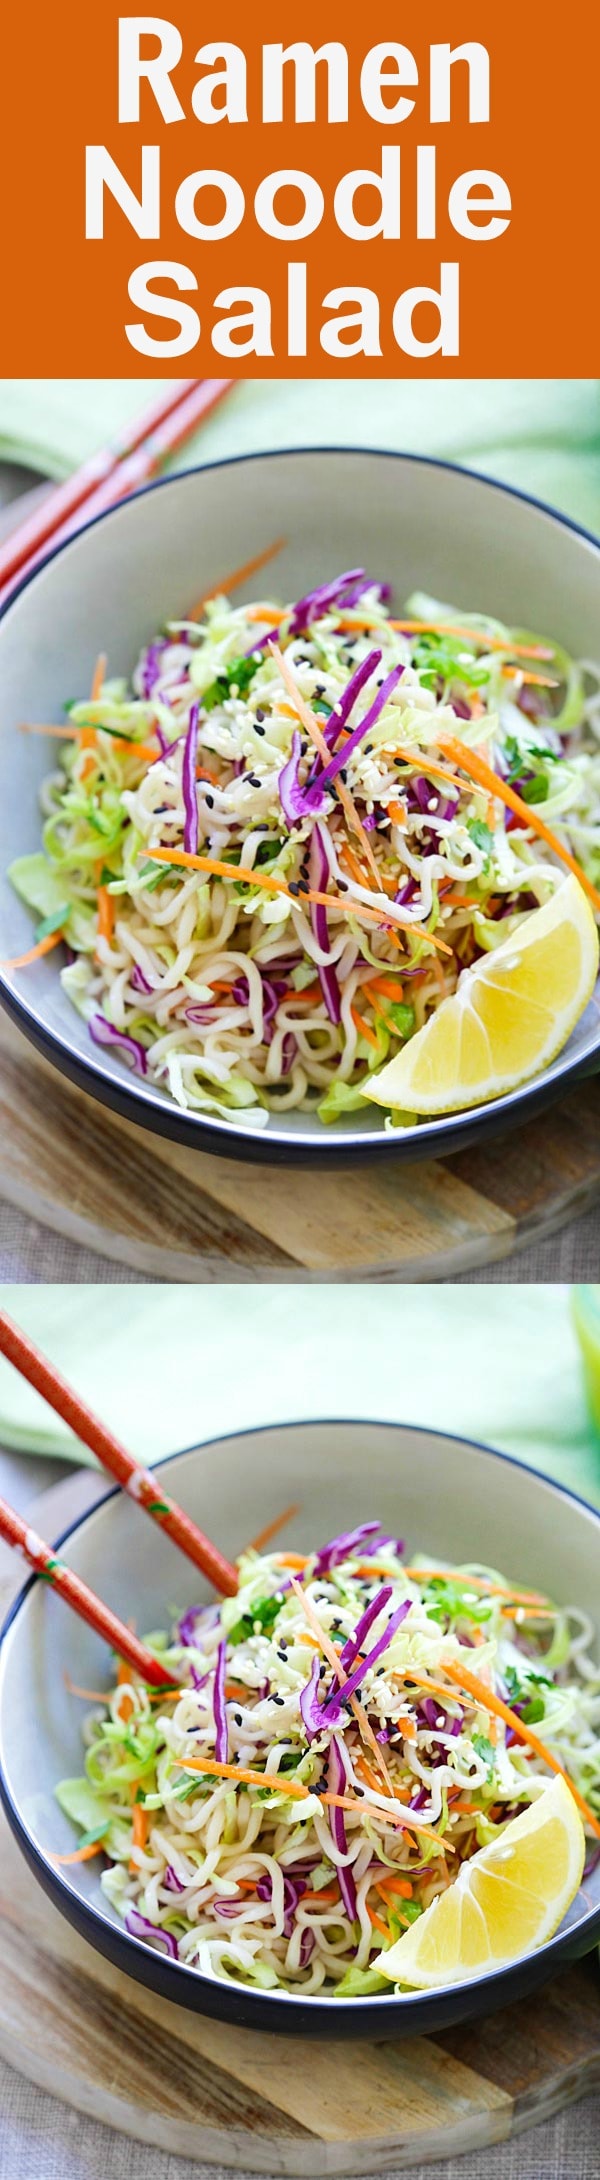 Asian Ramen Noodle Salad 49